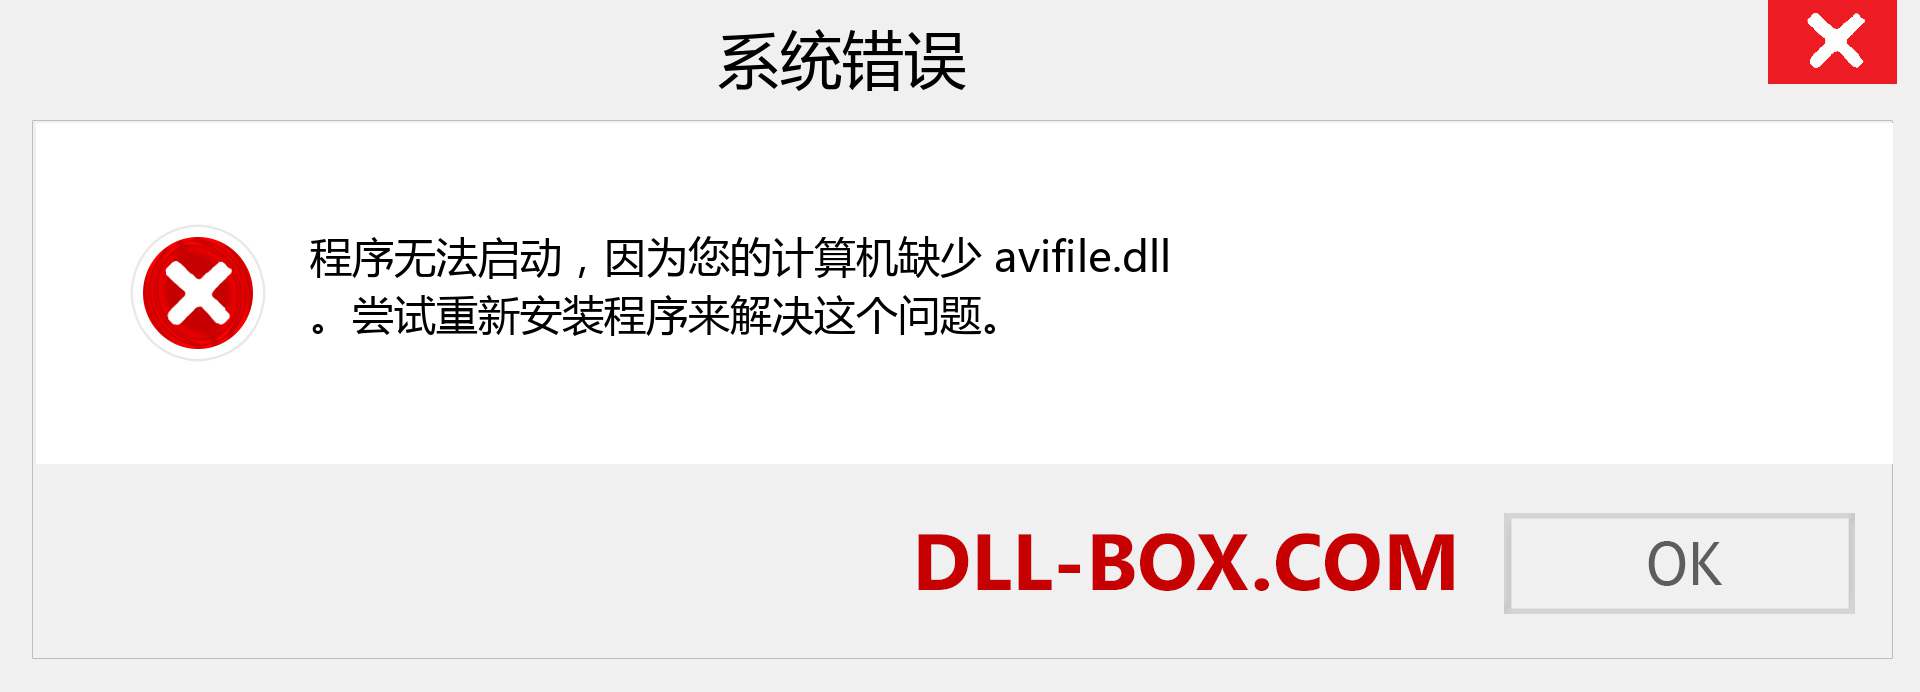 avifile.dll 文件丢失？。 适用于 Windows 7、8、10 的下载 - 修复 Windows、照片、图像上的 avifile dll 丢失错误